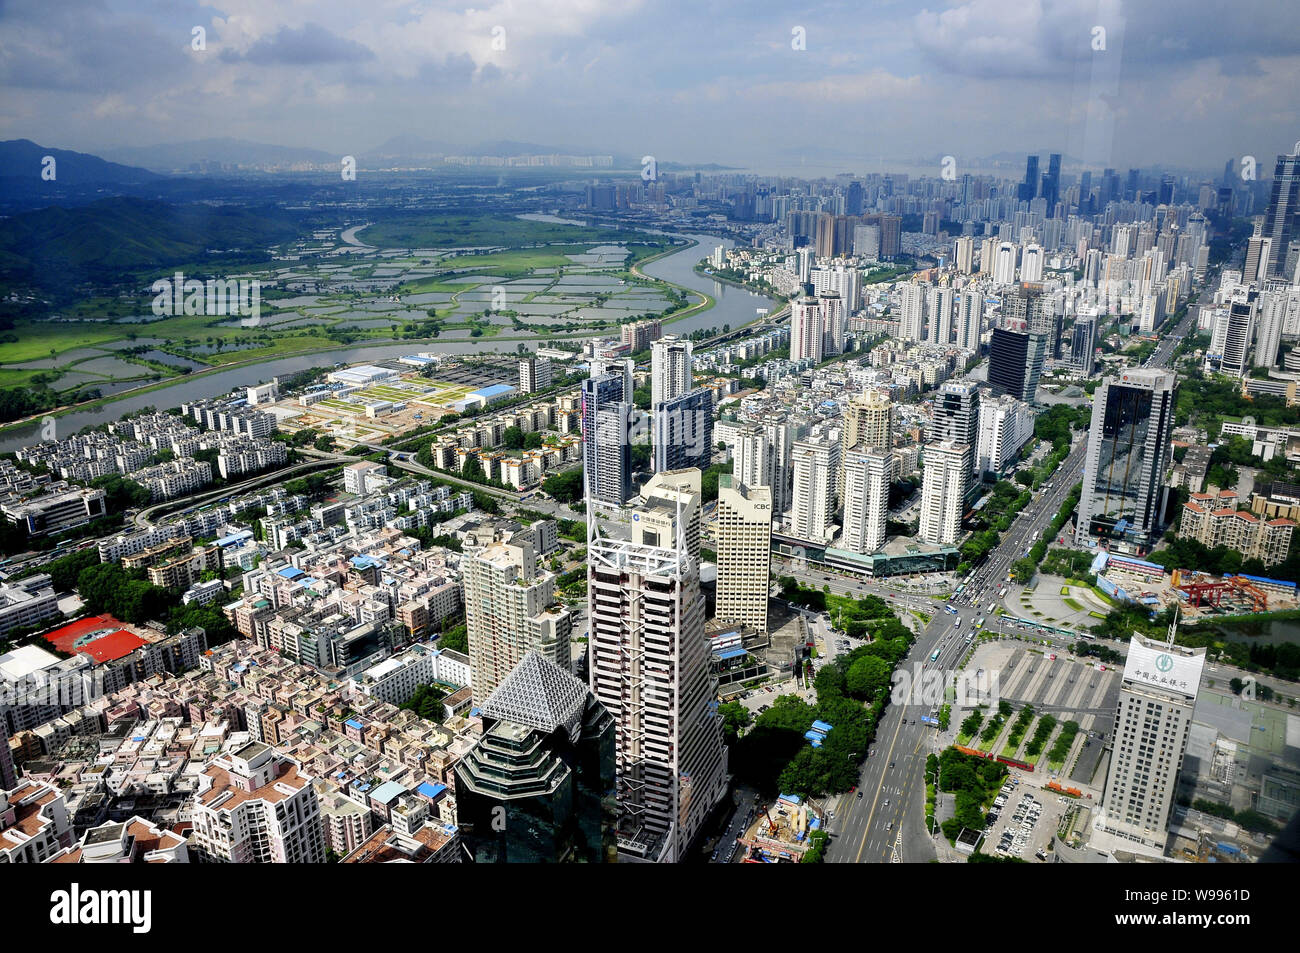 --FILE -- Darstellung von Clustern von Wolkenkratzern, Hochhaus Büro- und Wohngebäuden Mehrfamilienhäusern in Shenzhen City, South China Guangdong Provinz, 11 Au Stockfoto